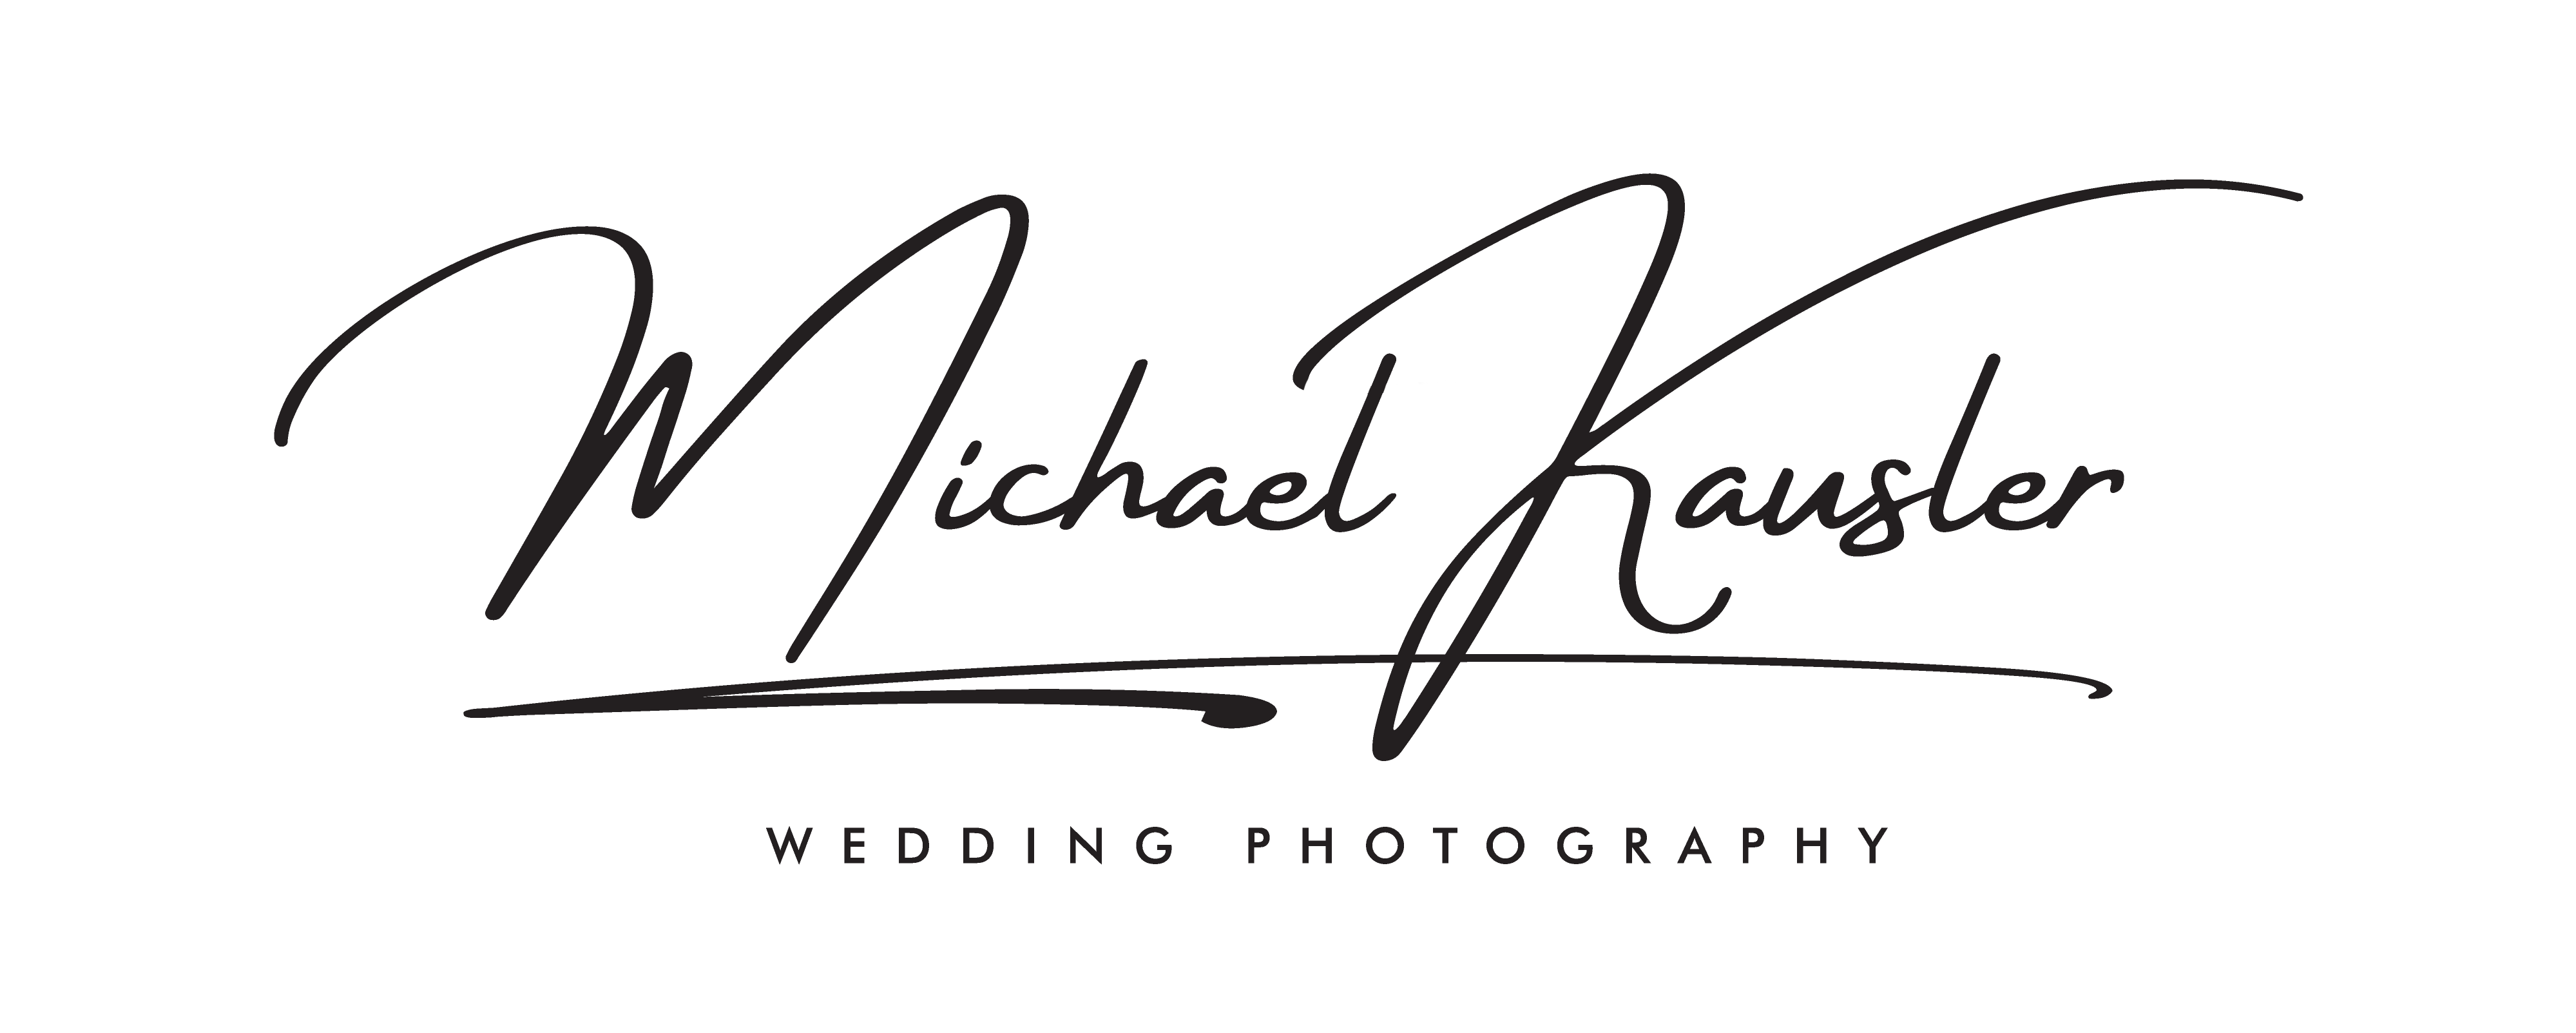 Michael Kausler Hochzeitsfotograf